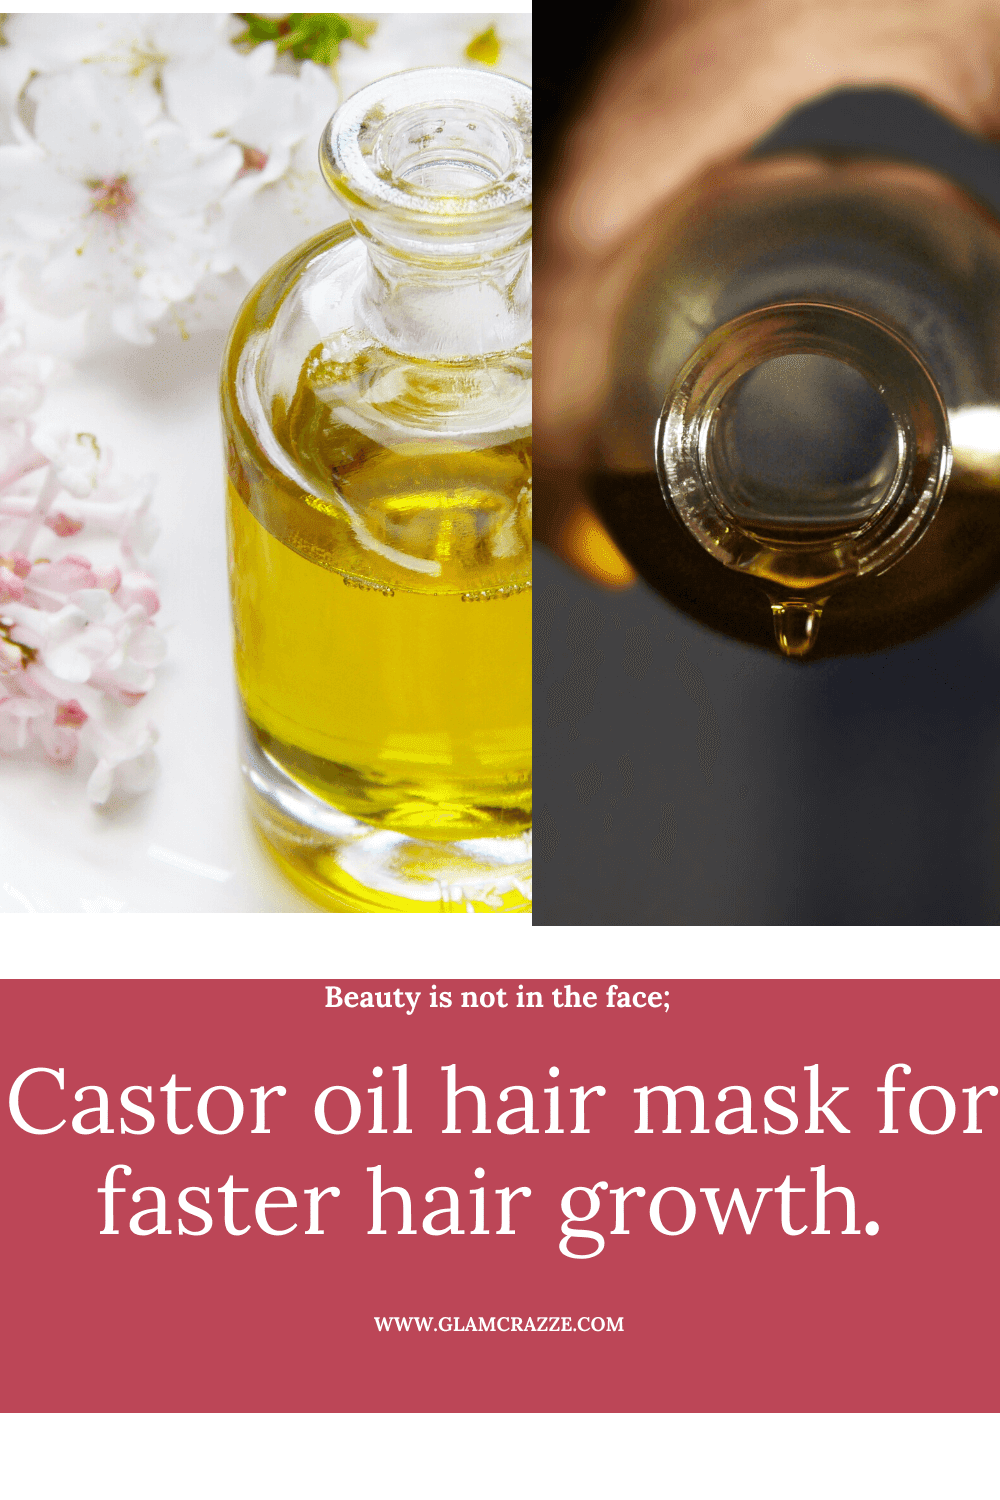 homemade tip for hair growth faster castor oil hair mask